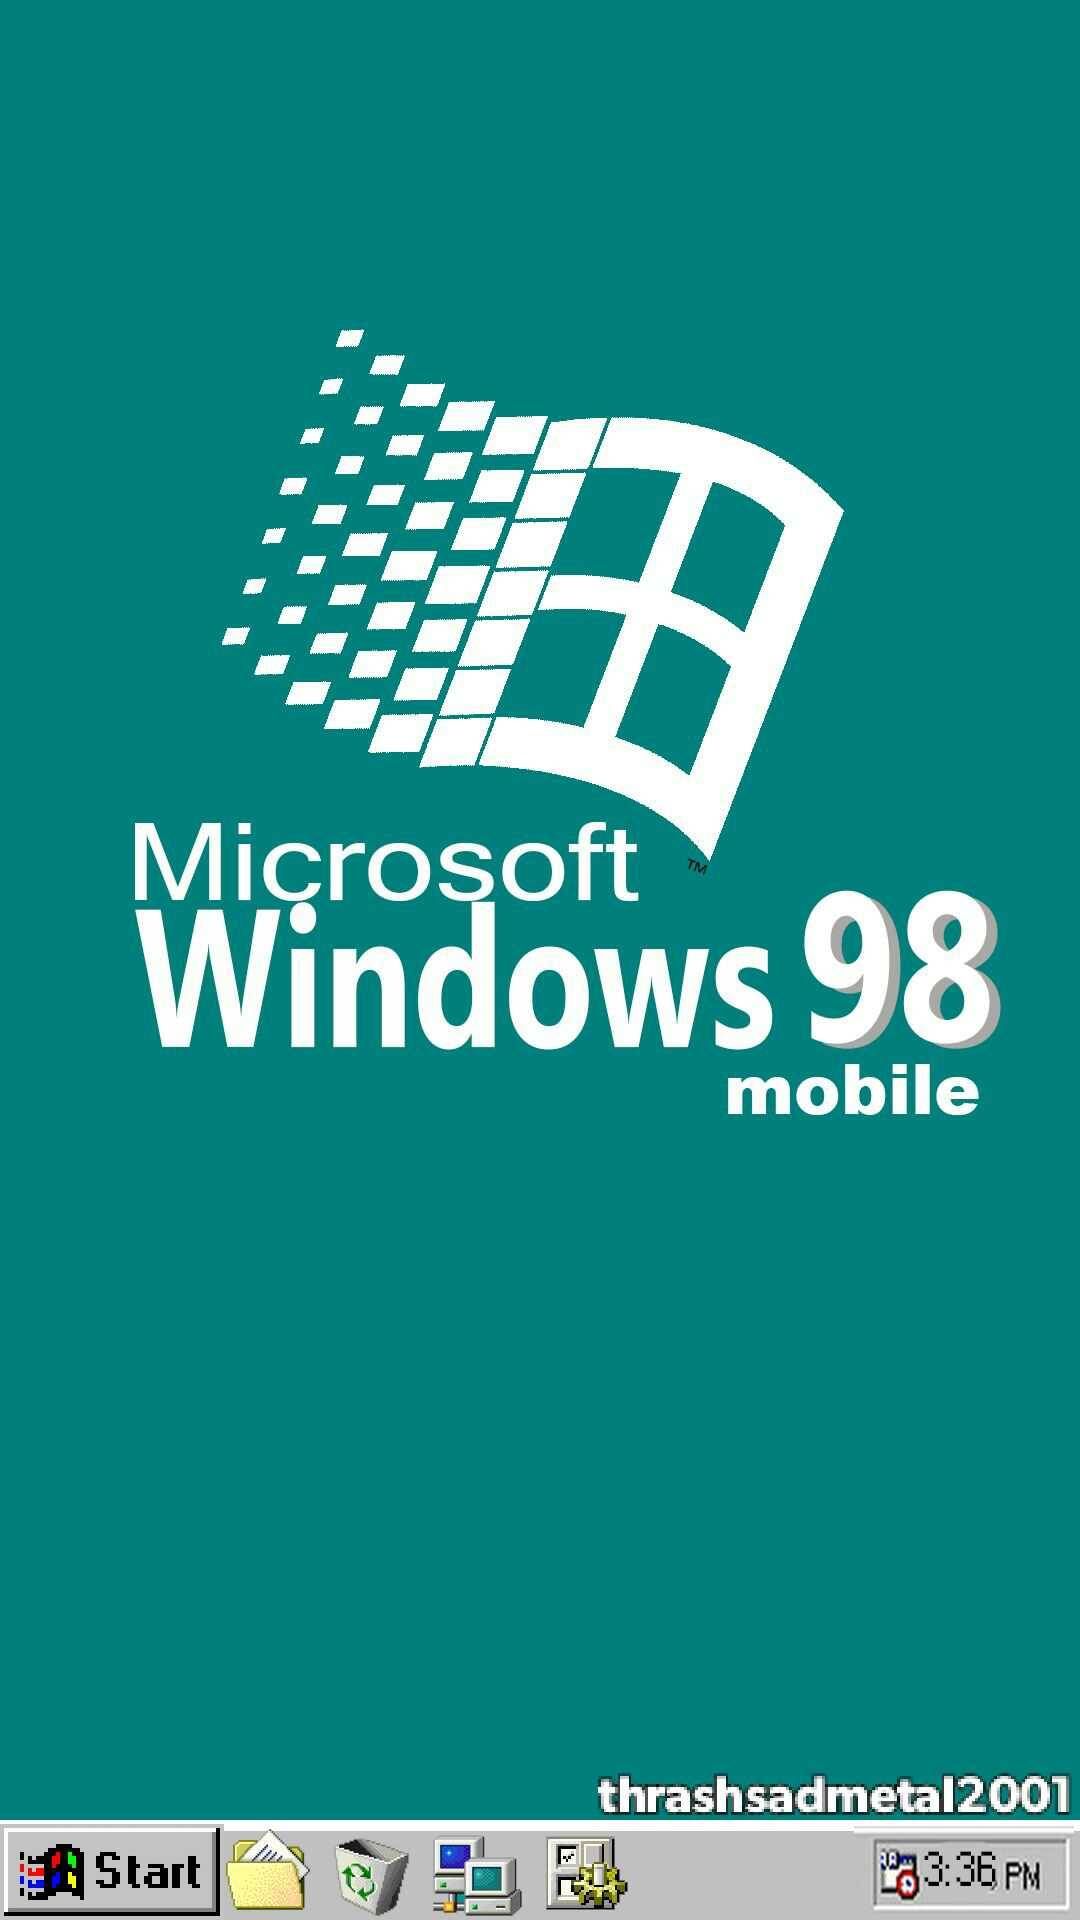 Hình nền Windows 98 thẩm mỹ từ Wallpaper Cave sẽ đưa bạn vào một thế giới khác, nơi ánh sáng, màu sắc, hình ảnh tạo nên một khung cảnh độc đáo và nổi bật. Hình nền sẽ không những tạo nên sự thú vị cho chiếc điện thoại của bạn, mà còn khiến bạn thấy thật tươi mới và đầy năng lượng!